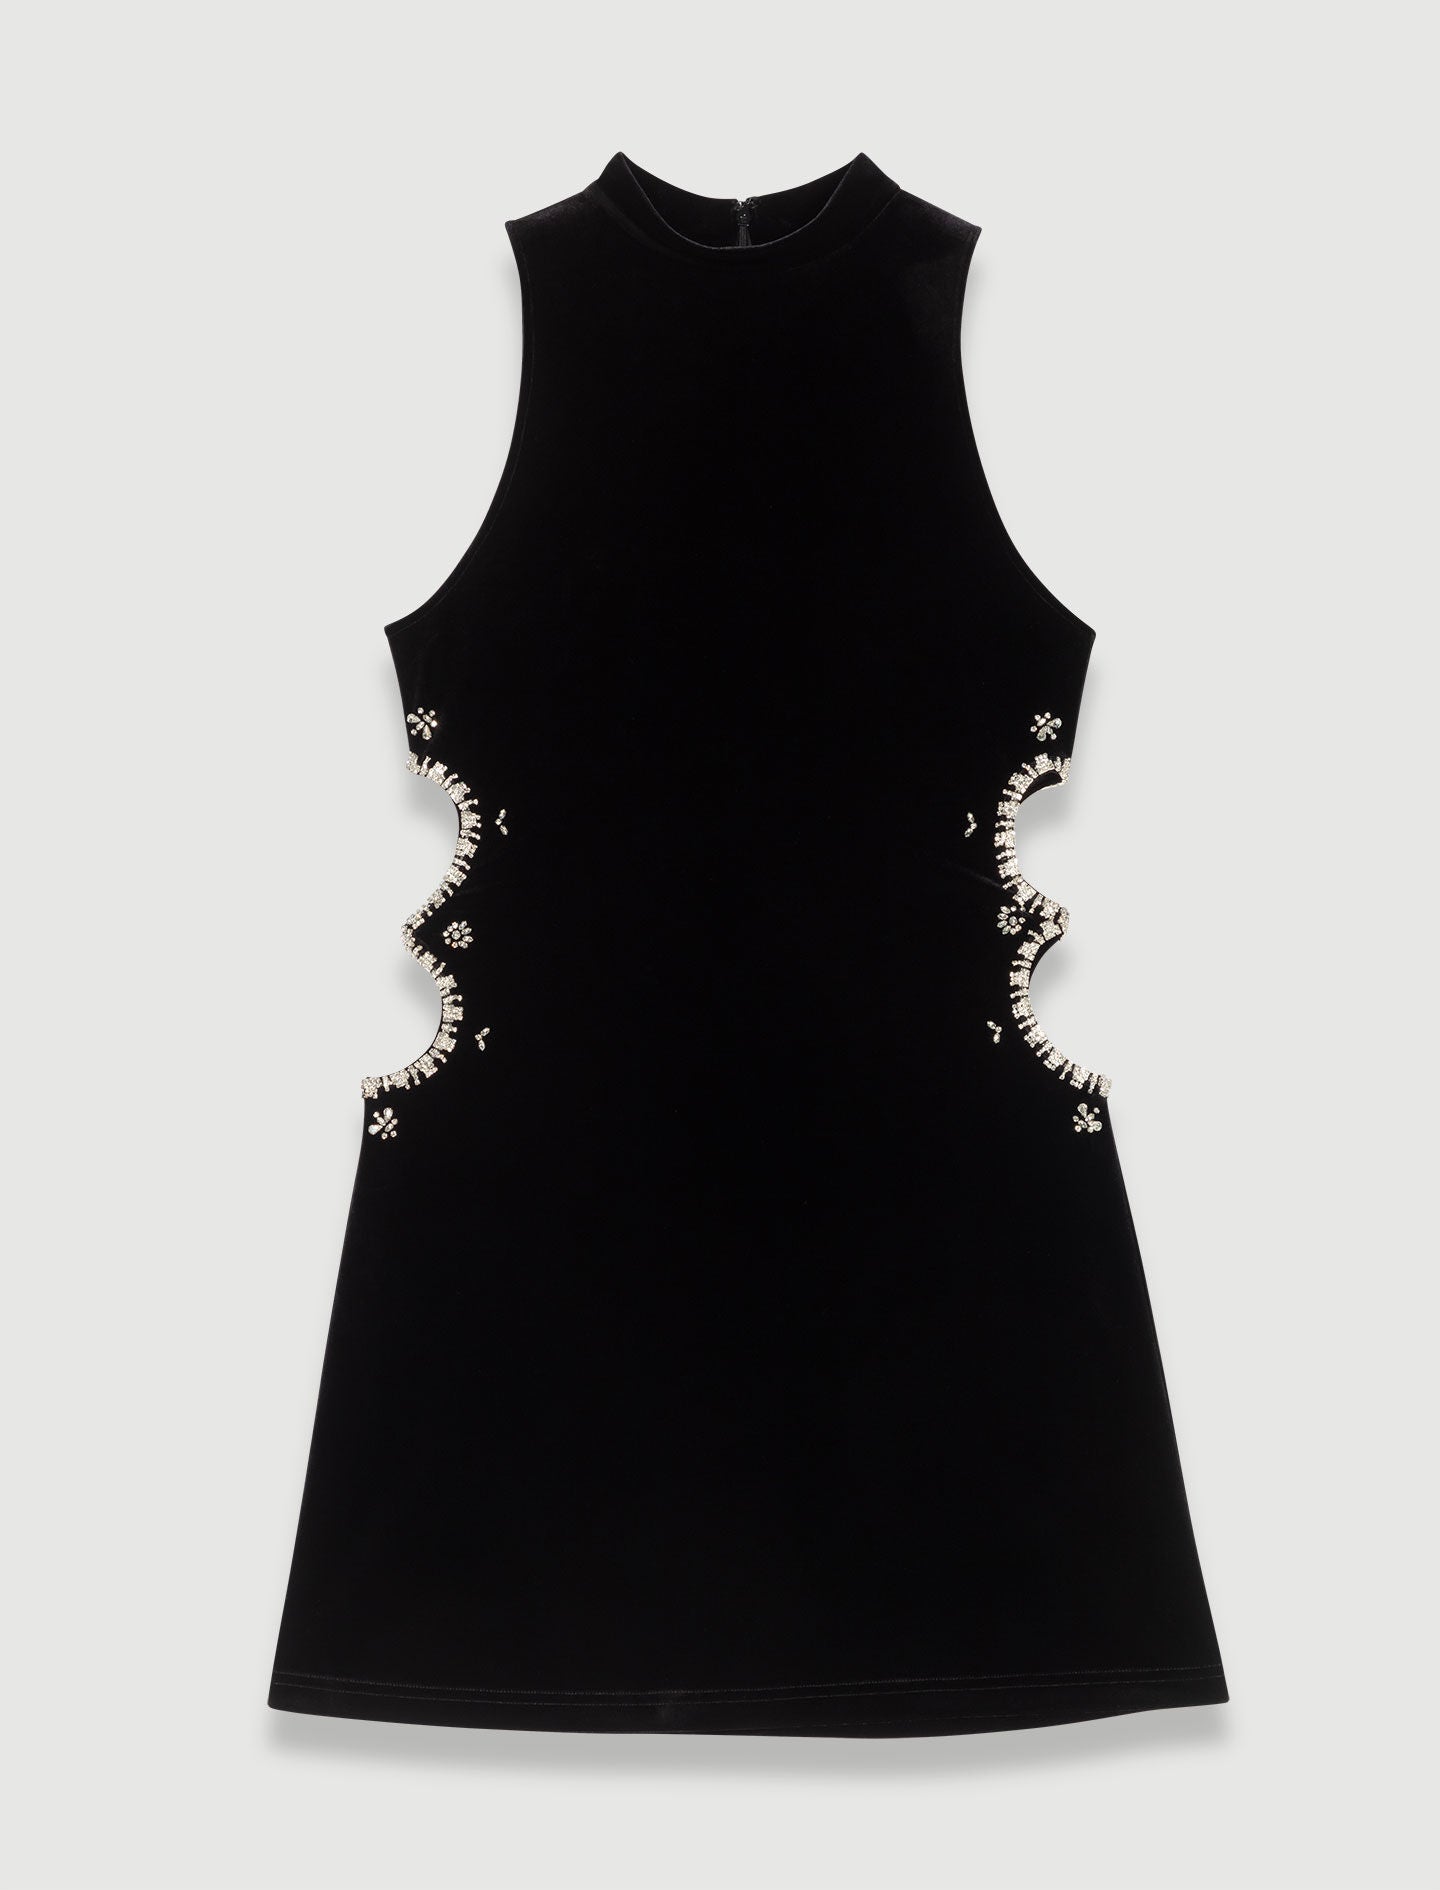 Black short velvet dress with rhinestones